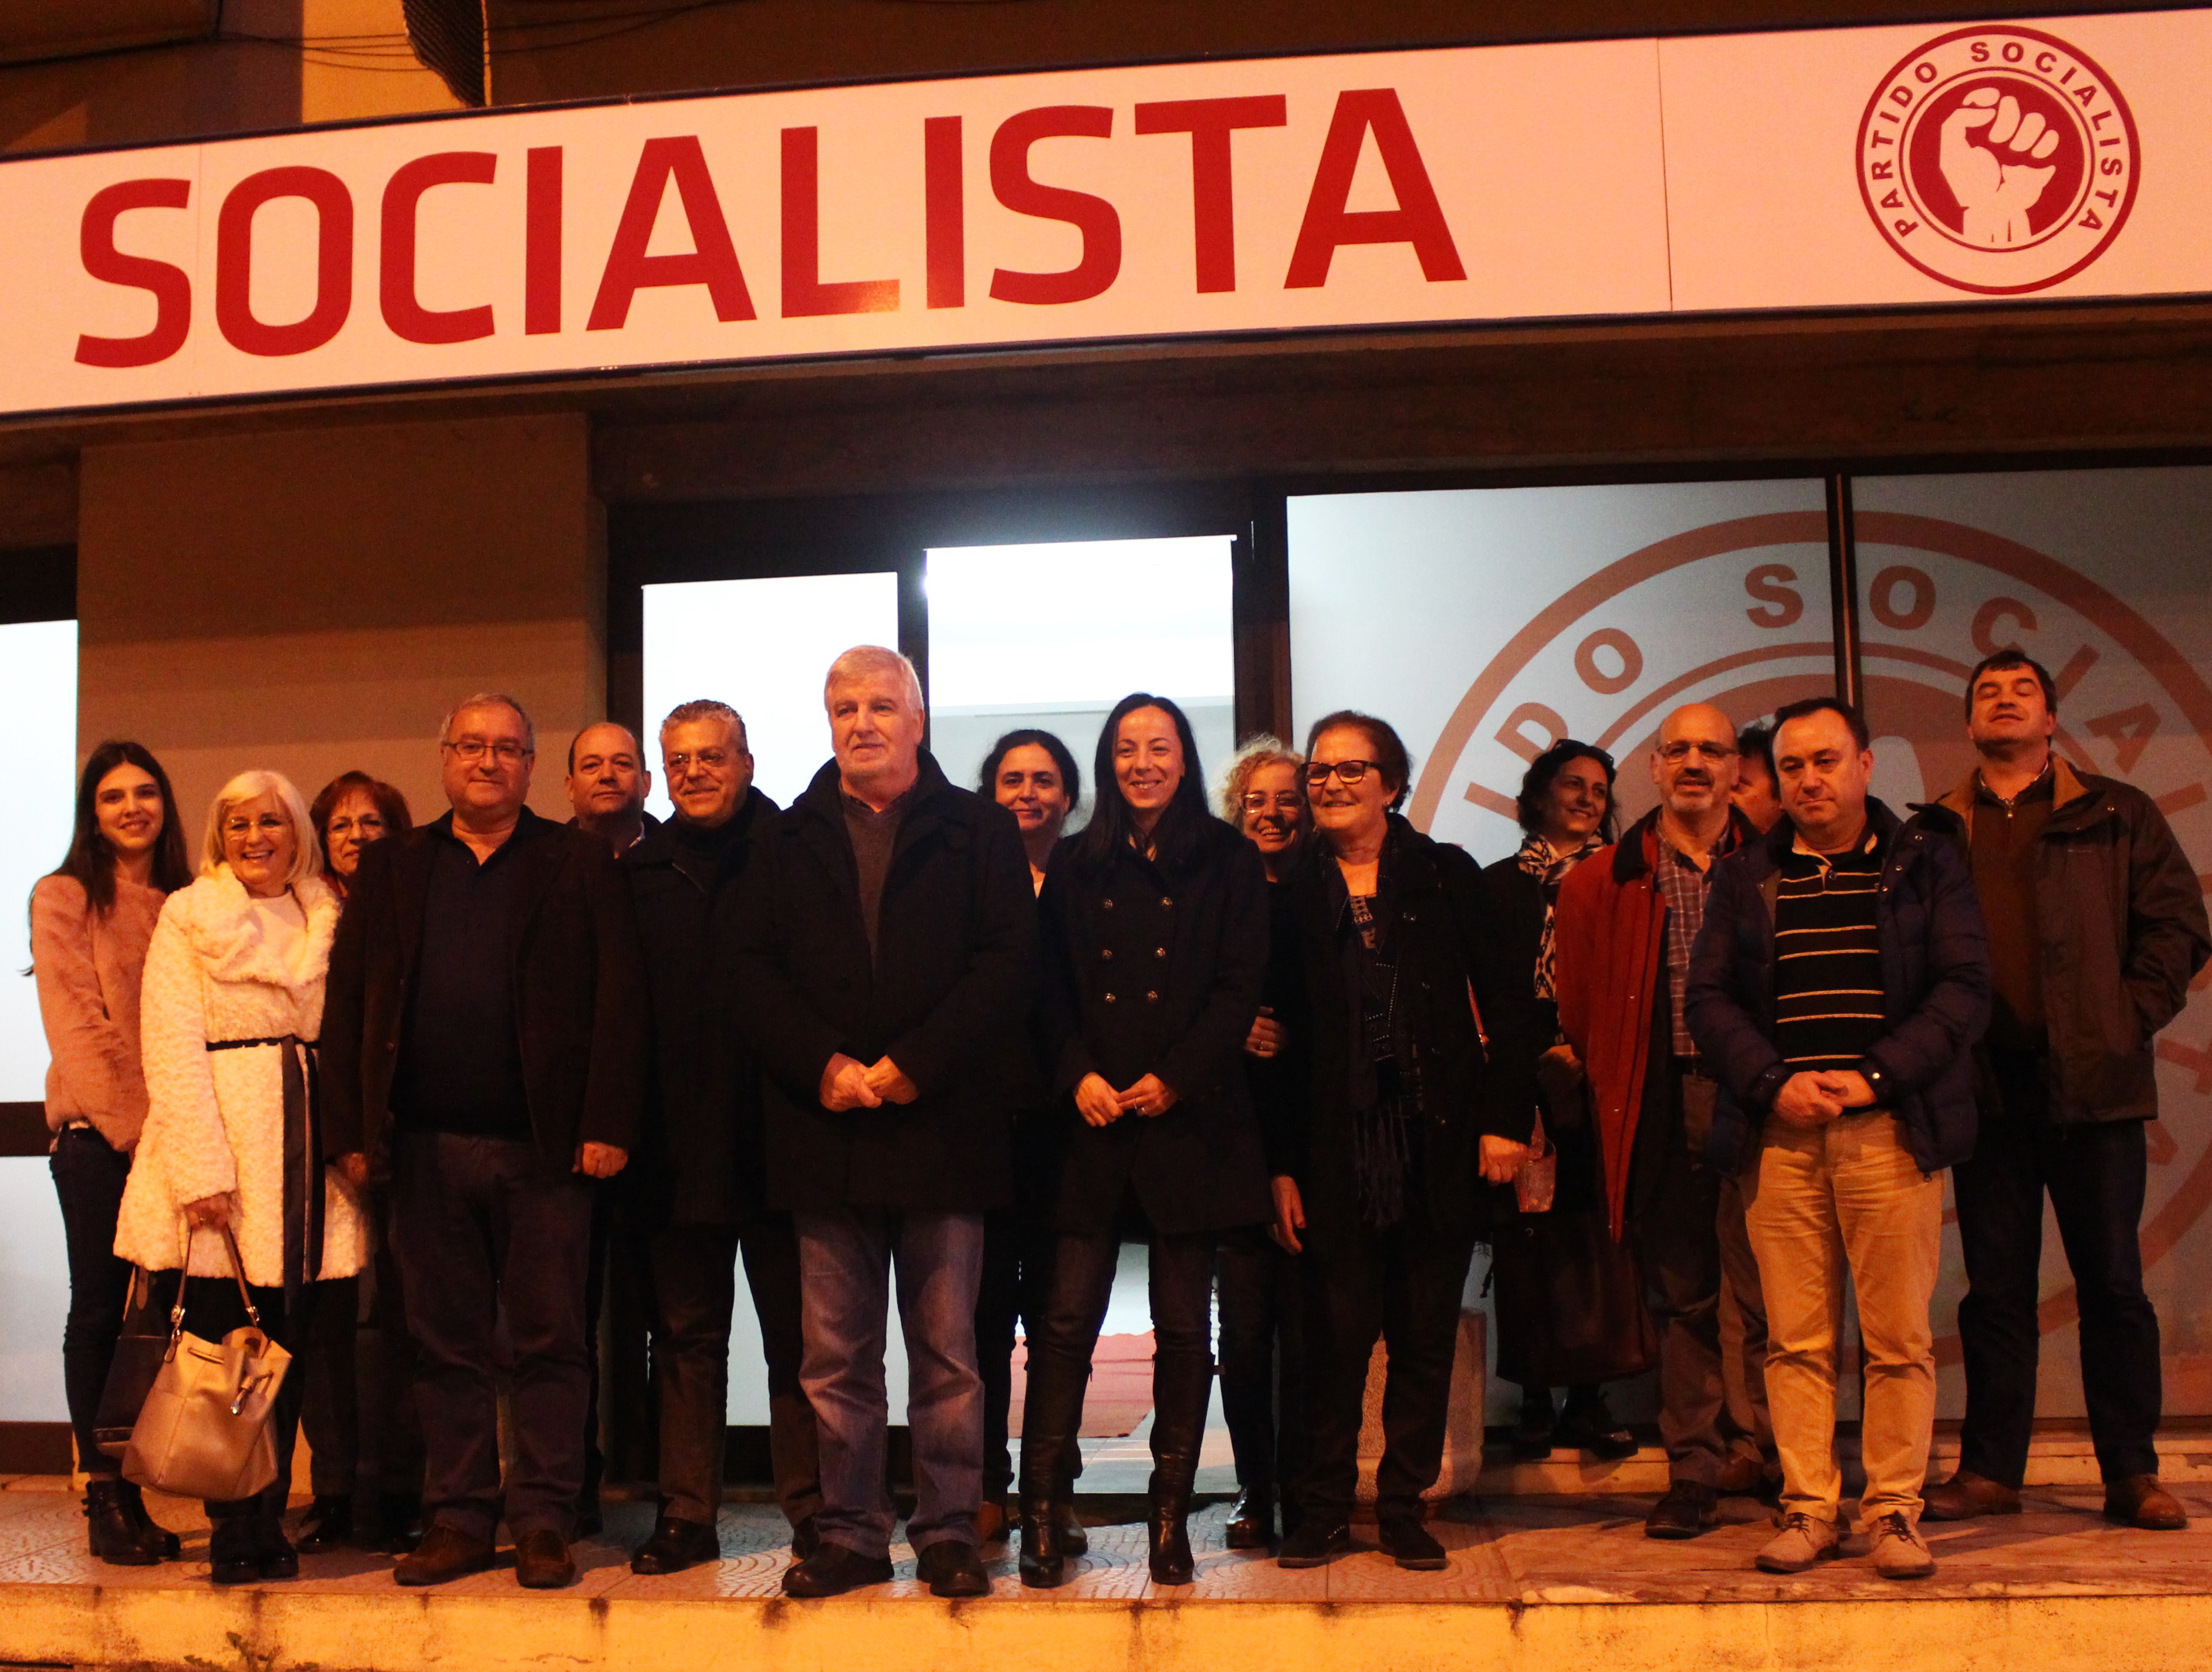 Maioria da estrutura concelhia socialista reitera apoio “inequívoco” a Jorge Gomes